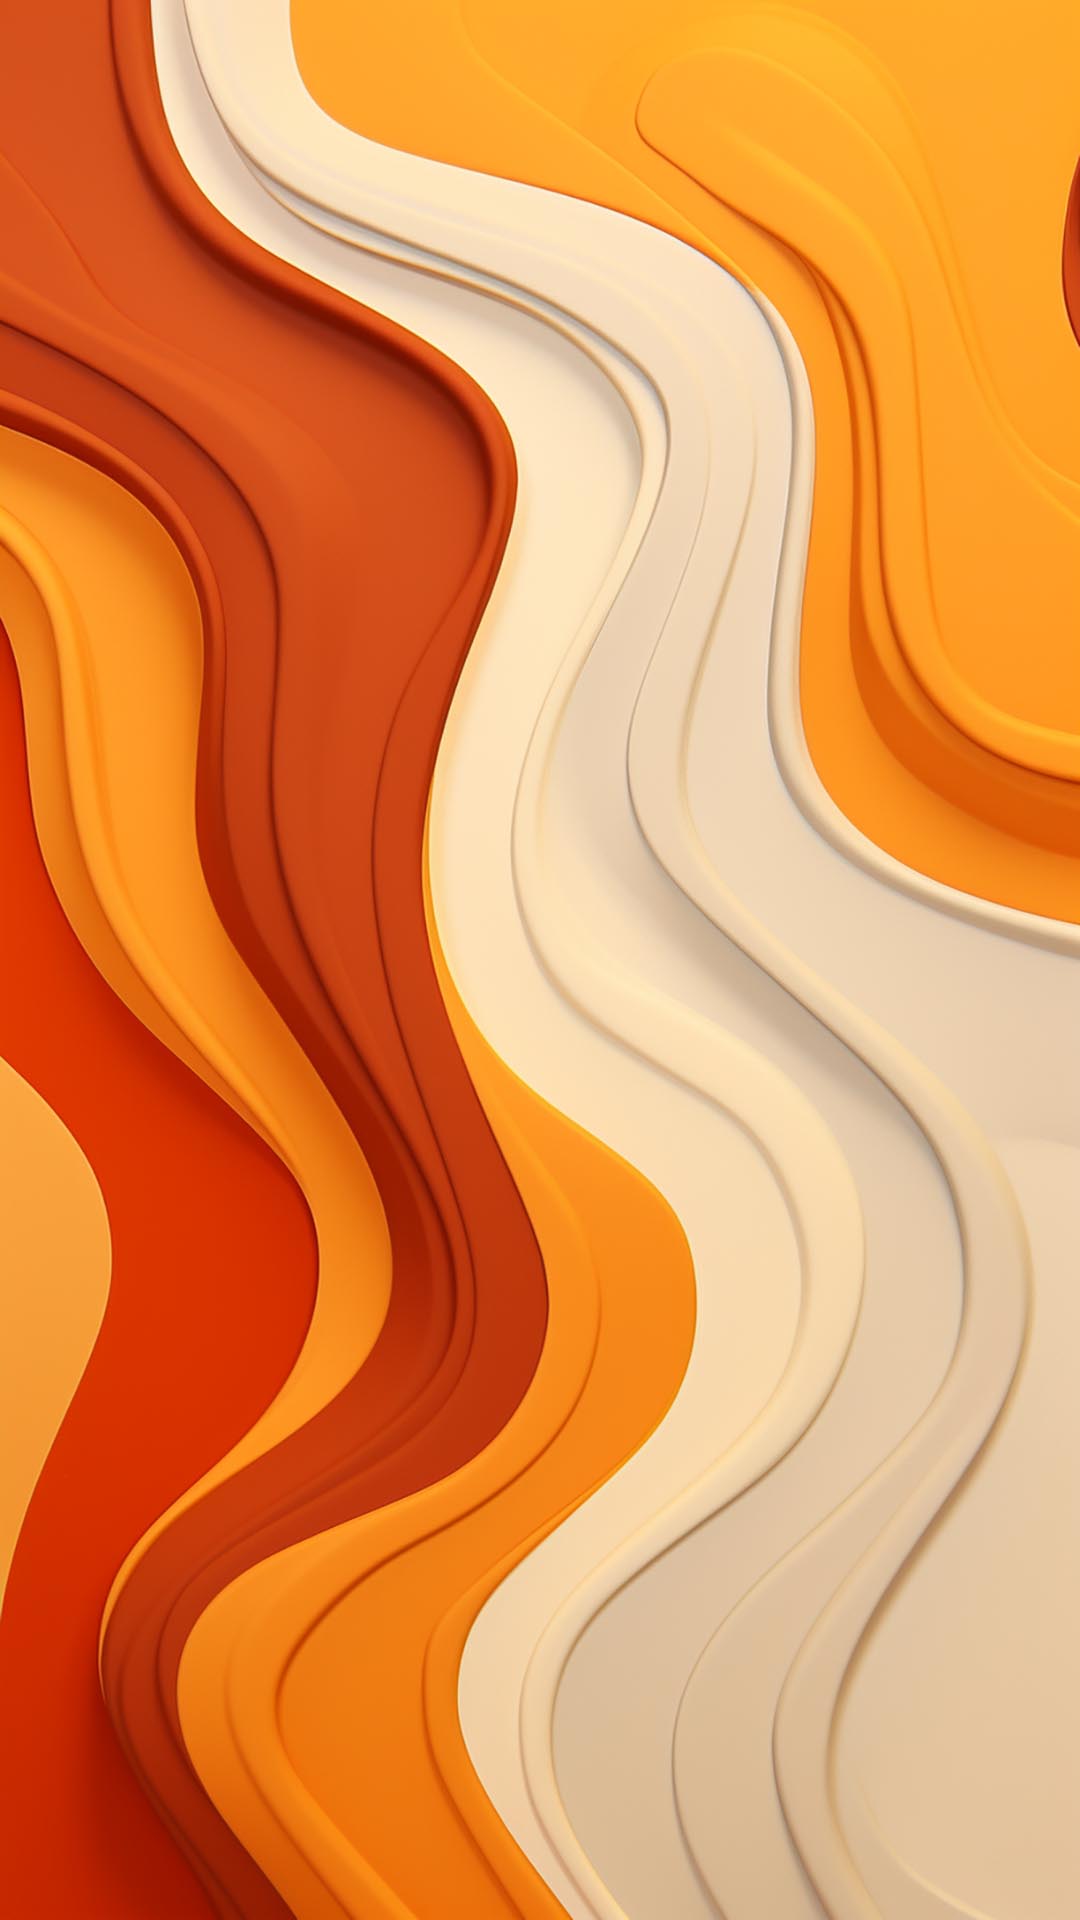 Fantastic abstract 3D wavy November colors wallpaper